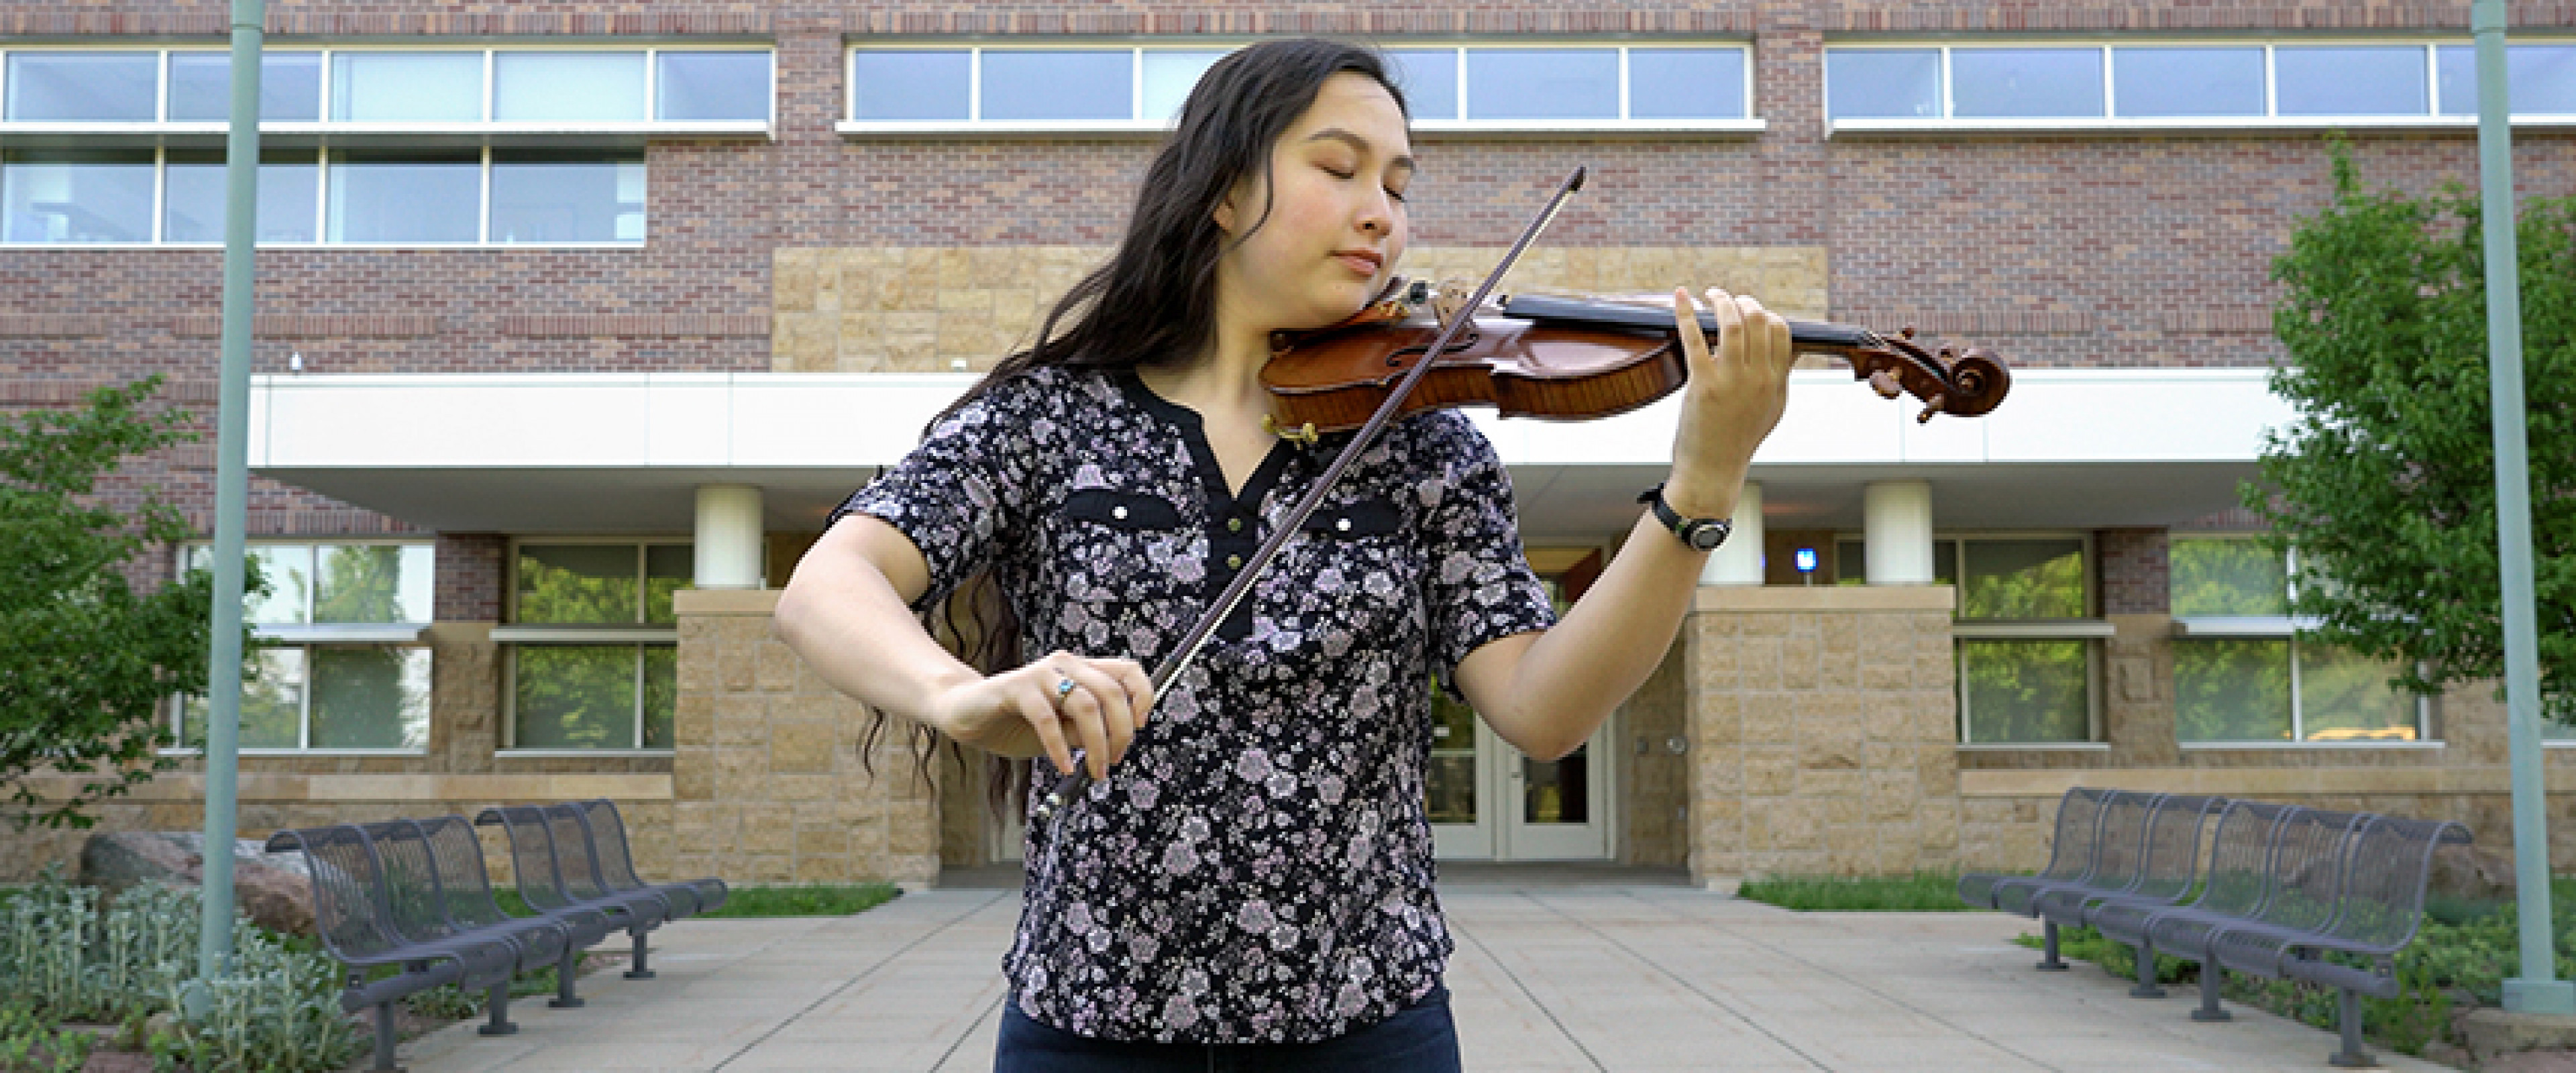 Emily Bosak playing violin.